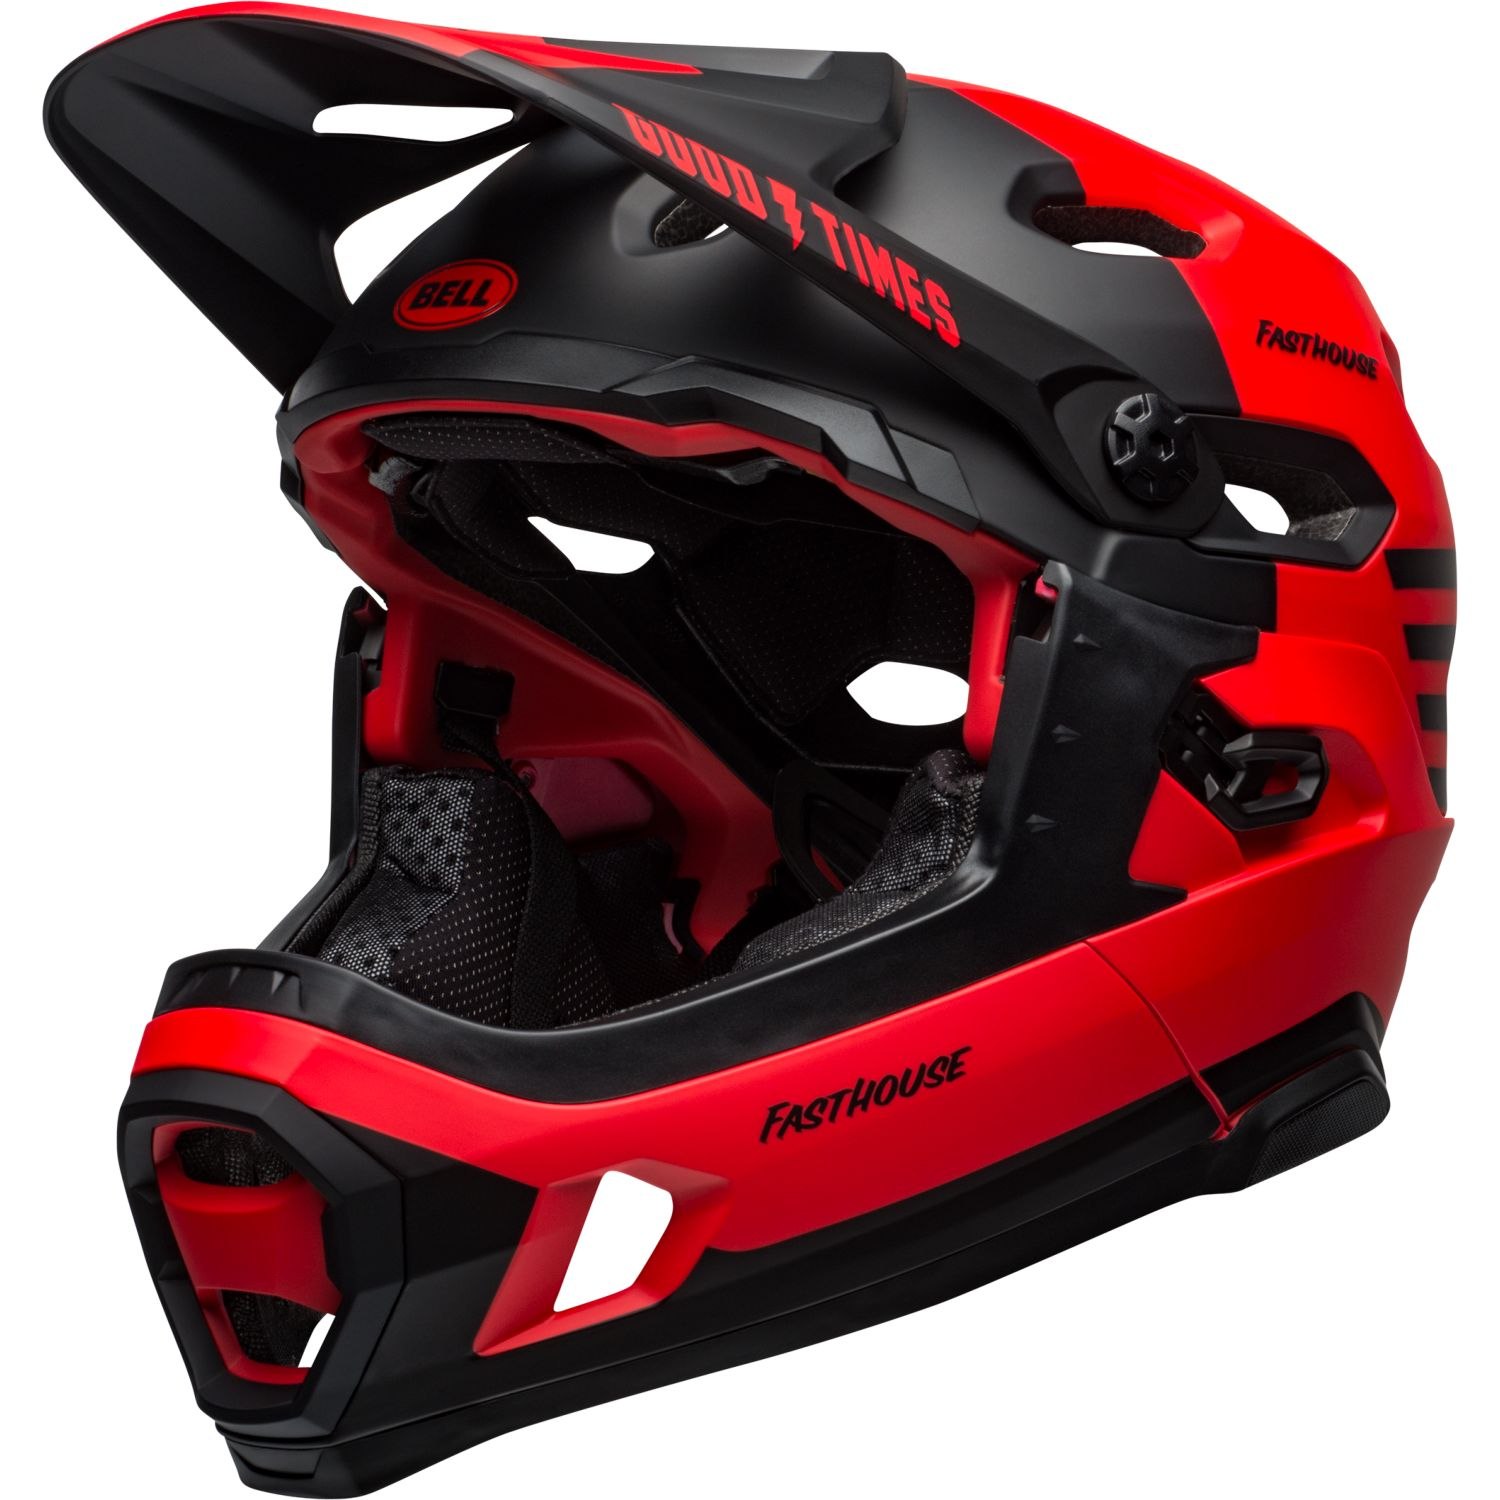 Image of Bell Super DH Spherical Helmet - matt/gloss red/black fasthouse